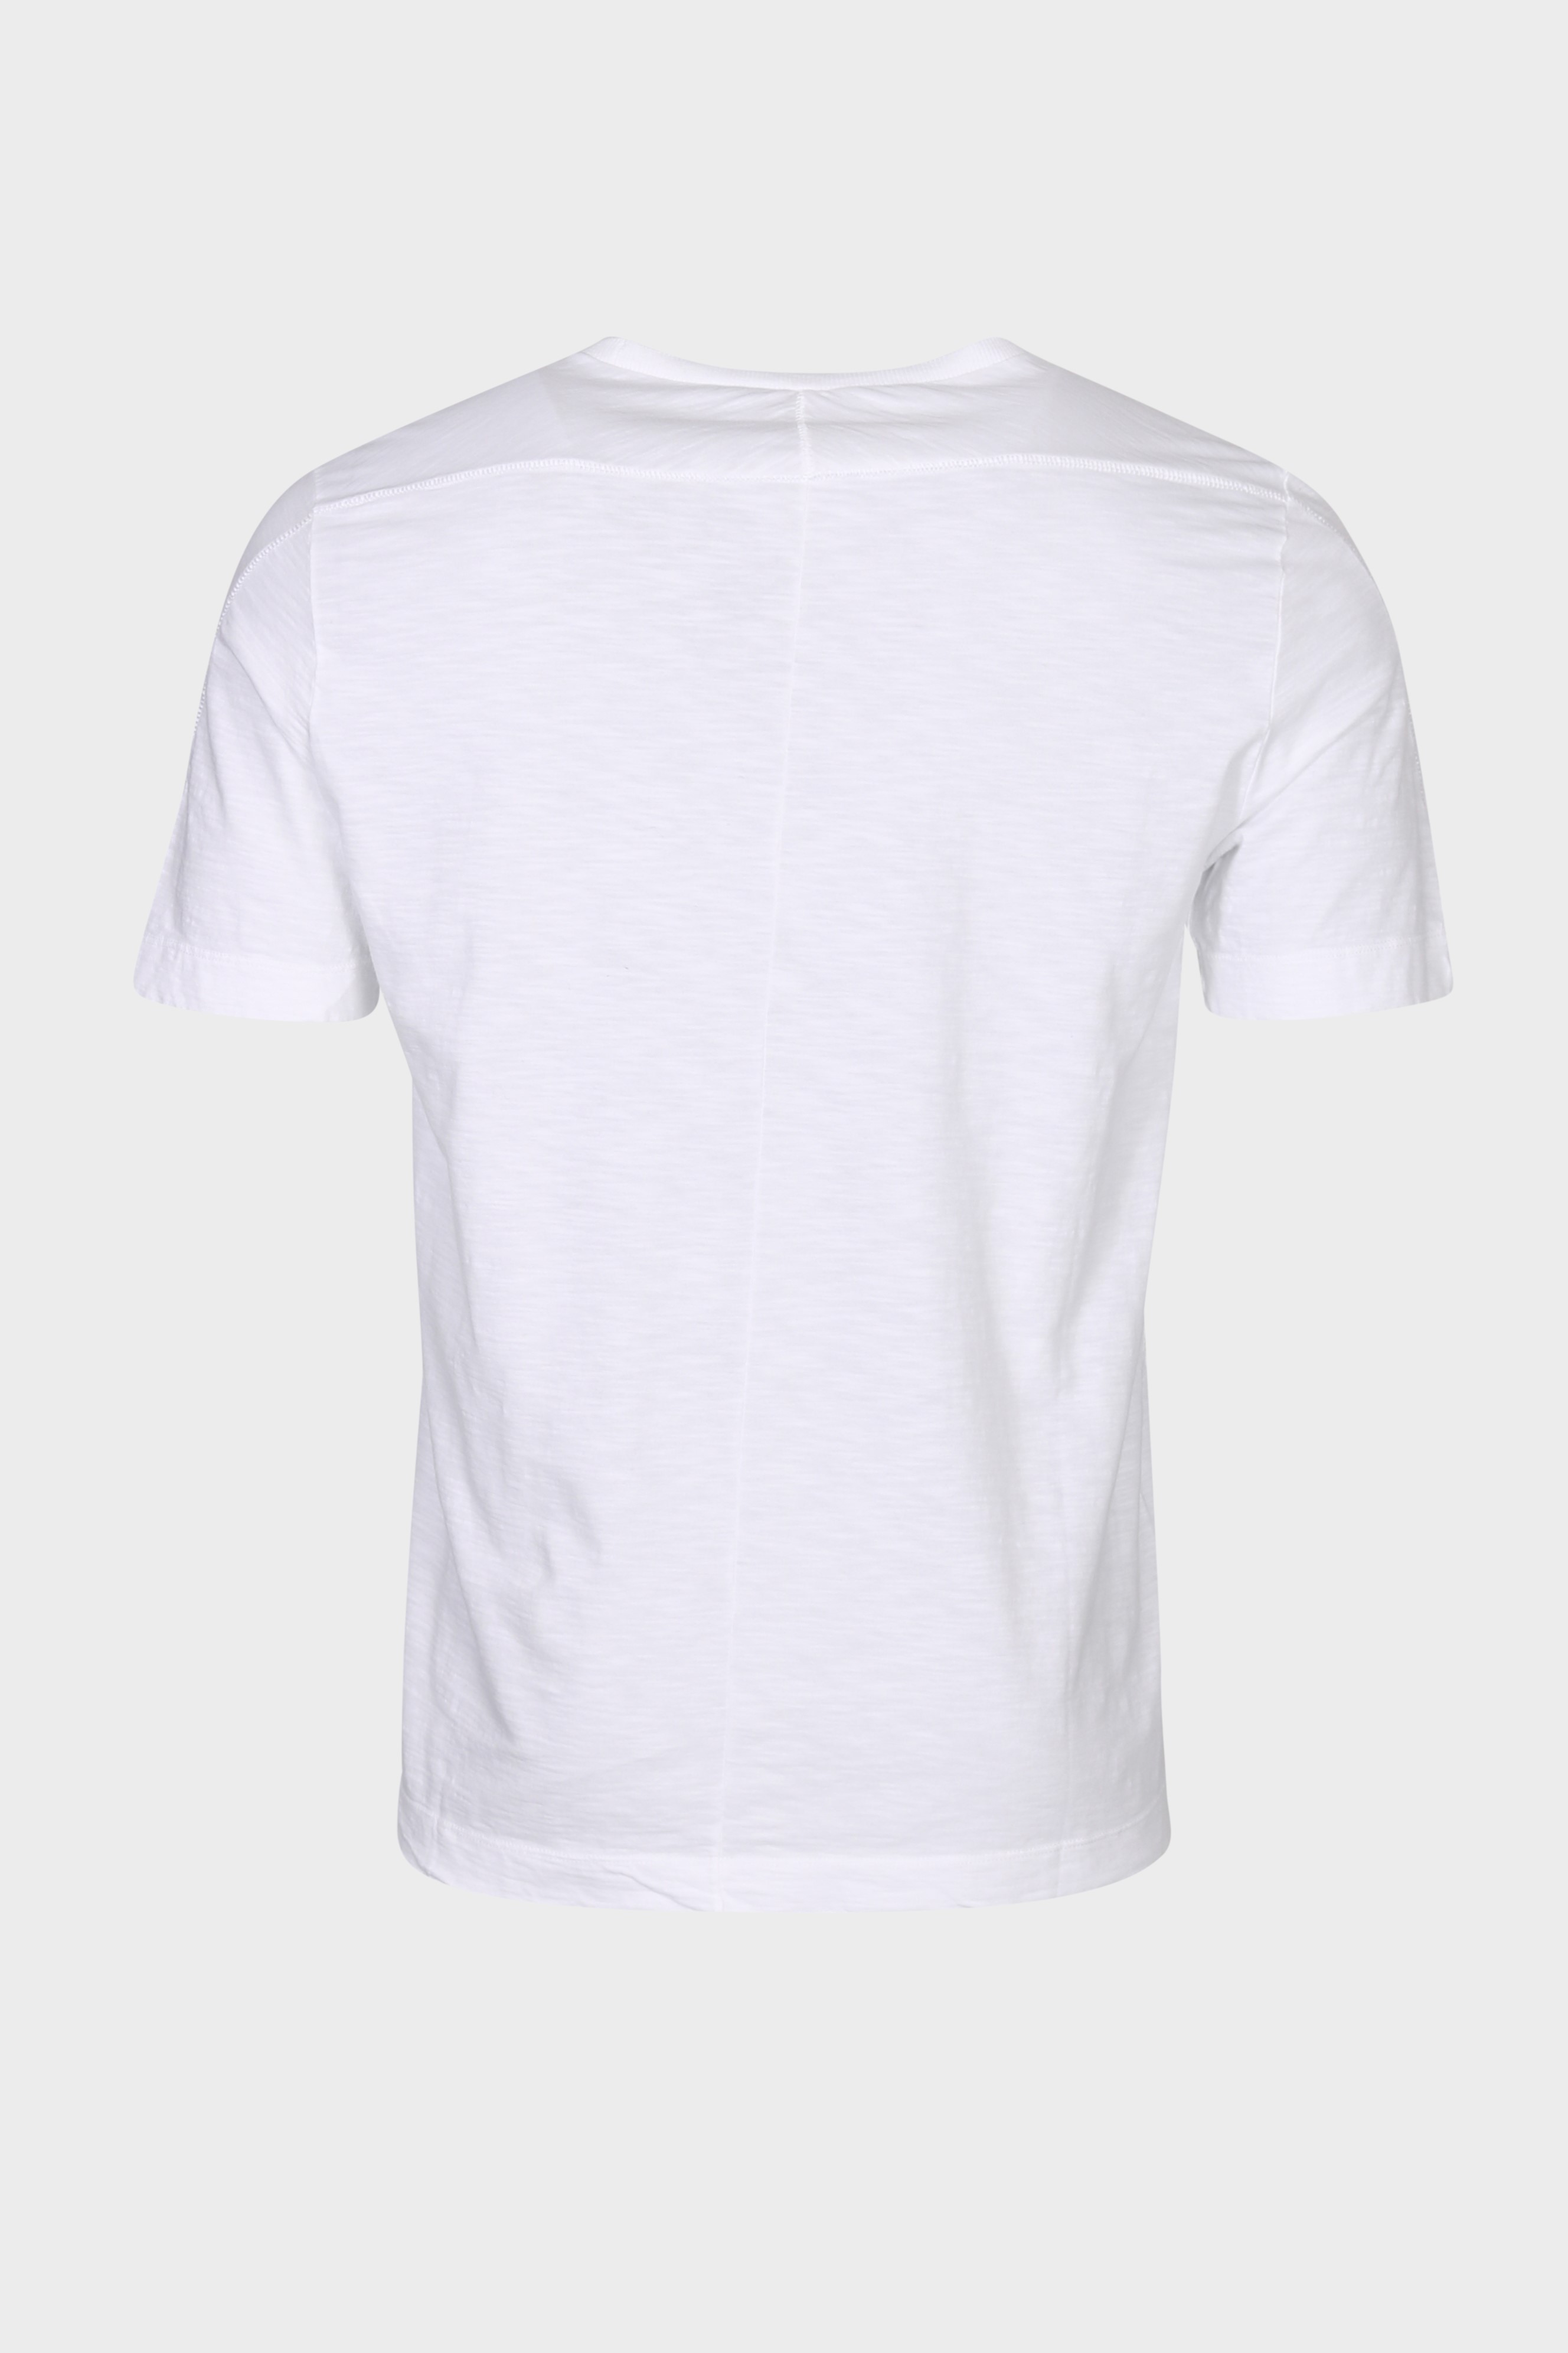 TRANSIT UOMO Cotton T-Shirt in White L